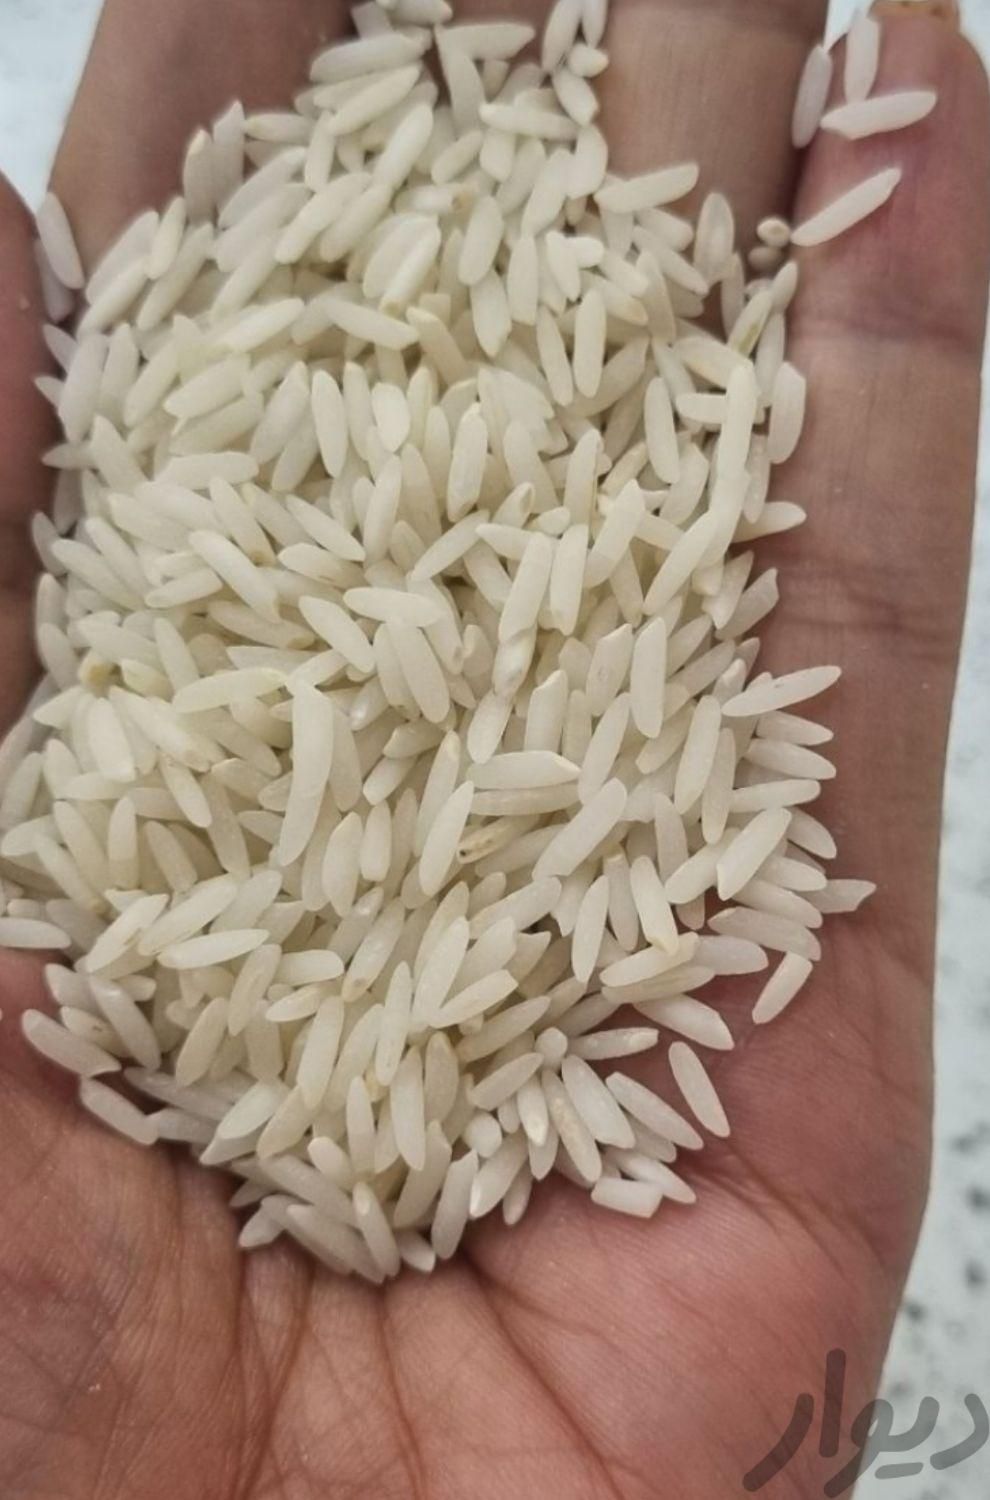 برنج مجلسی شمالی|خوردنی و آشامیدنی|اهواز, کوی مهدیس|دیوار